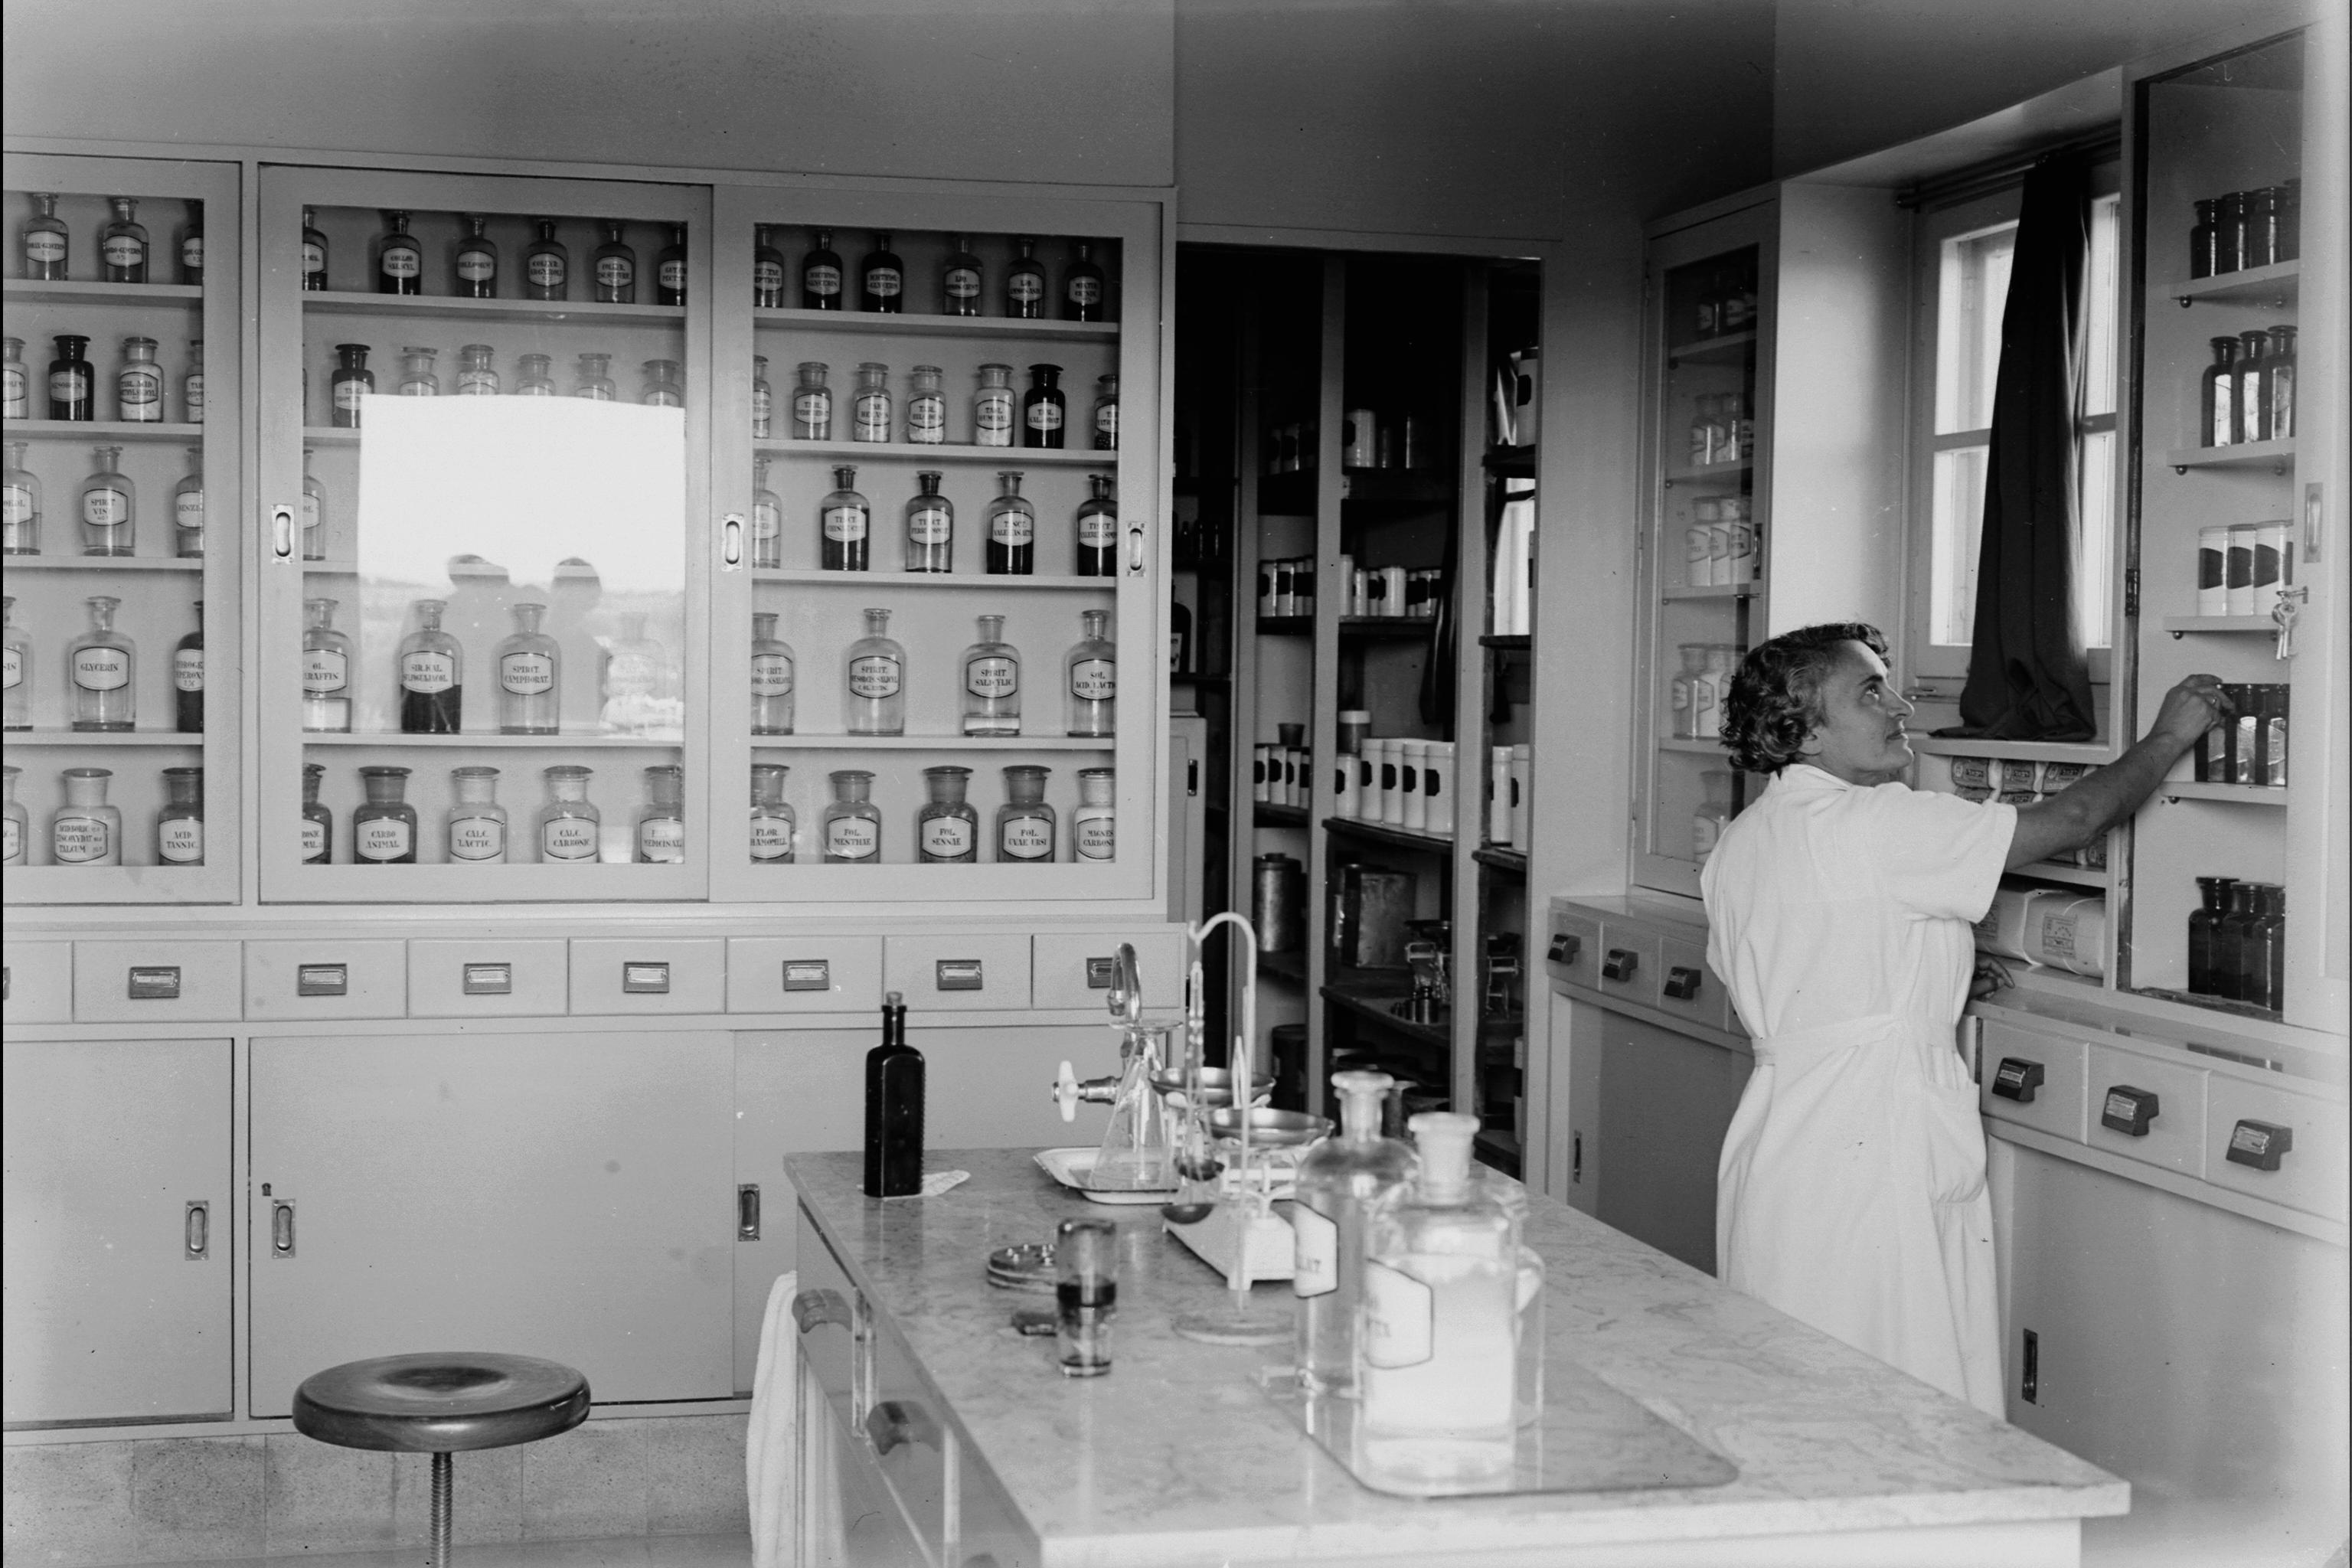 Pharmacy of Kupat Holim, ca. 1942